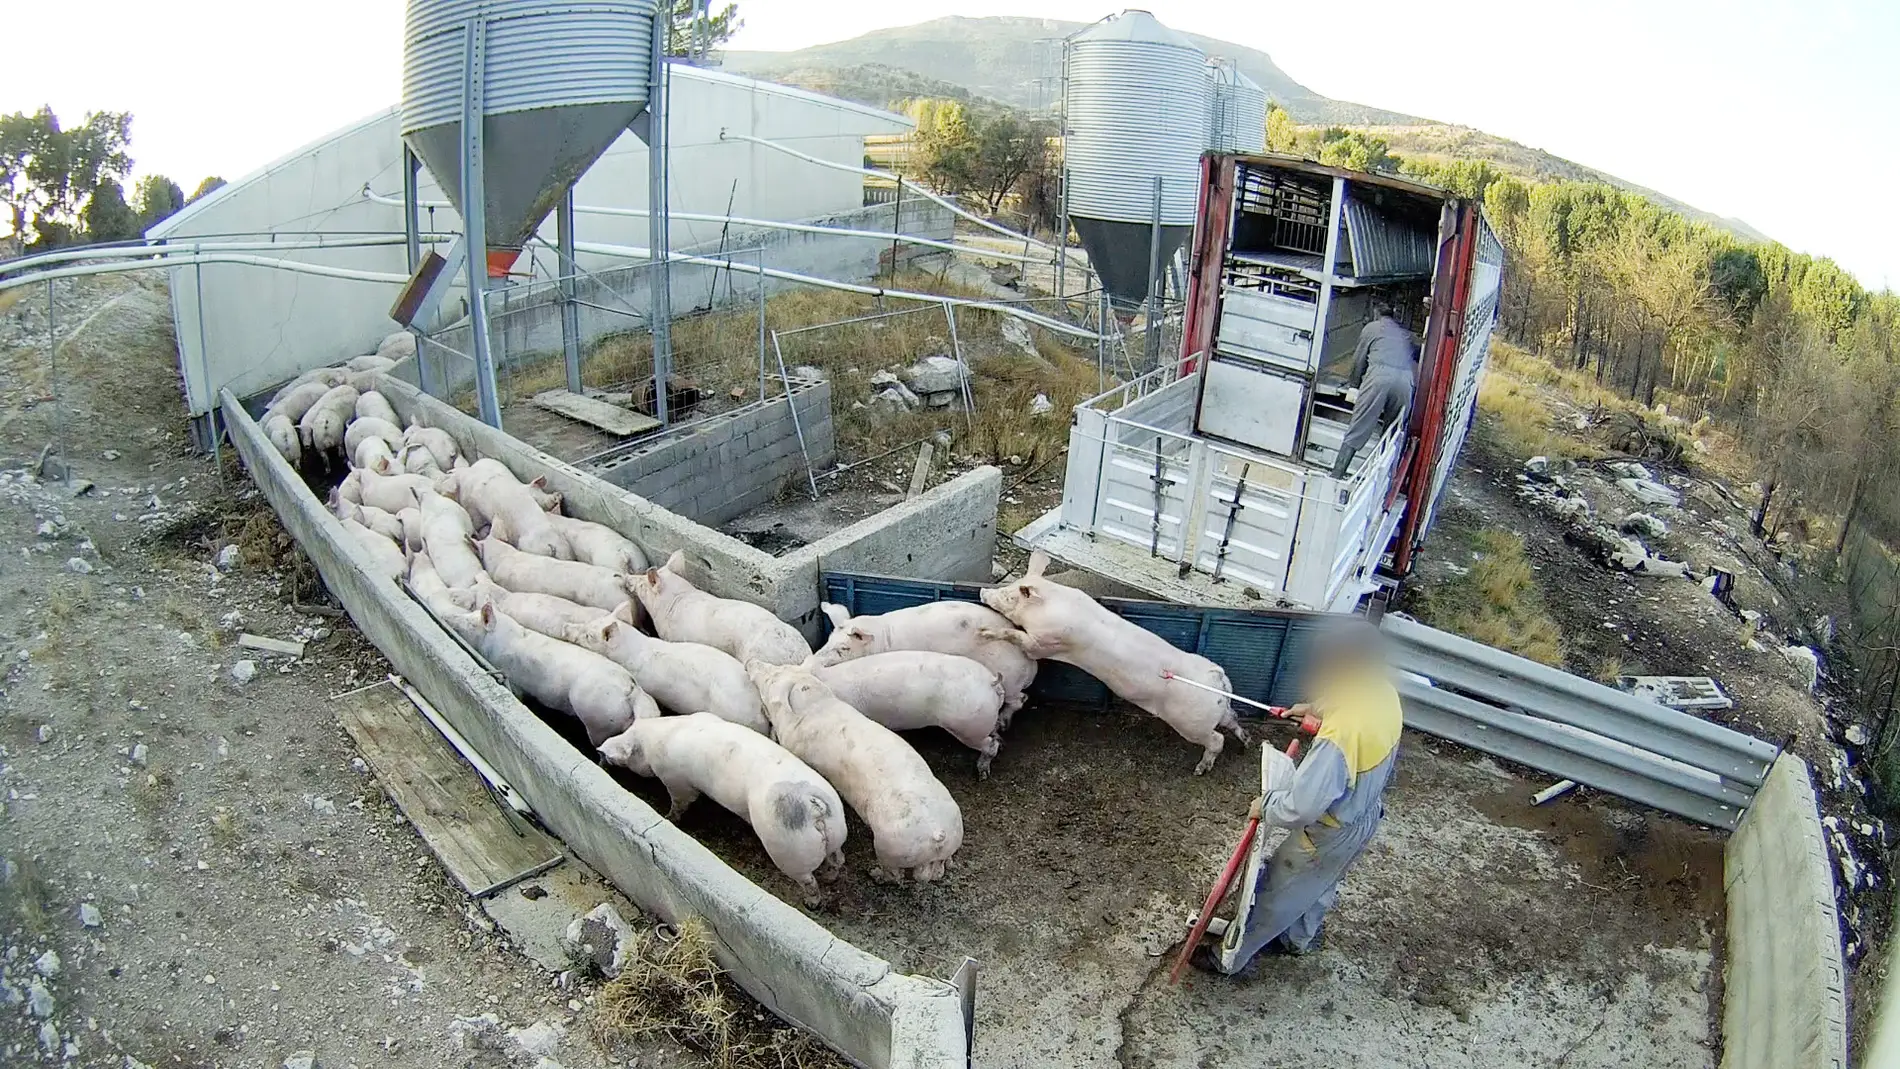 Cerdos en la granja porcina denunciada por el Observatorio de Bienestar Animal/ Observatorio de Bienestar Animal 